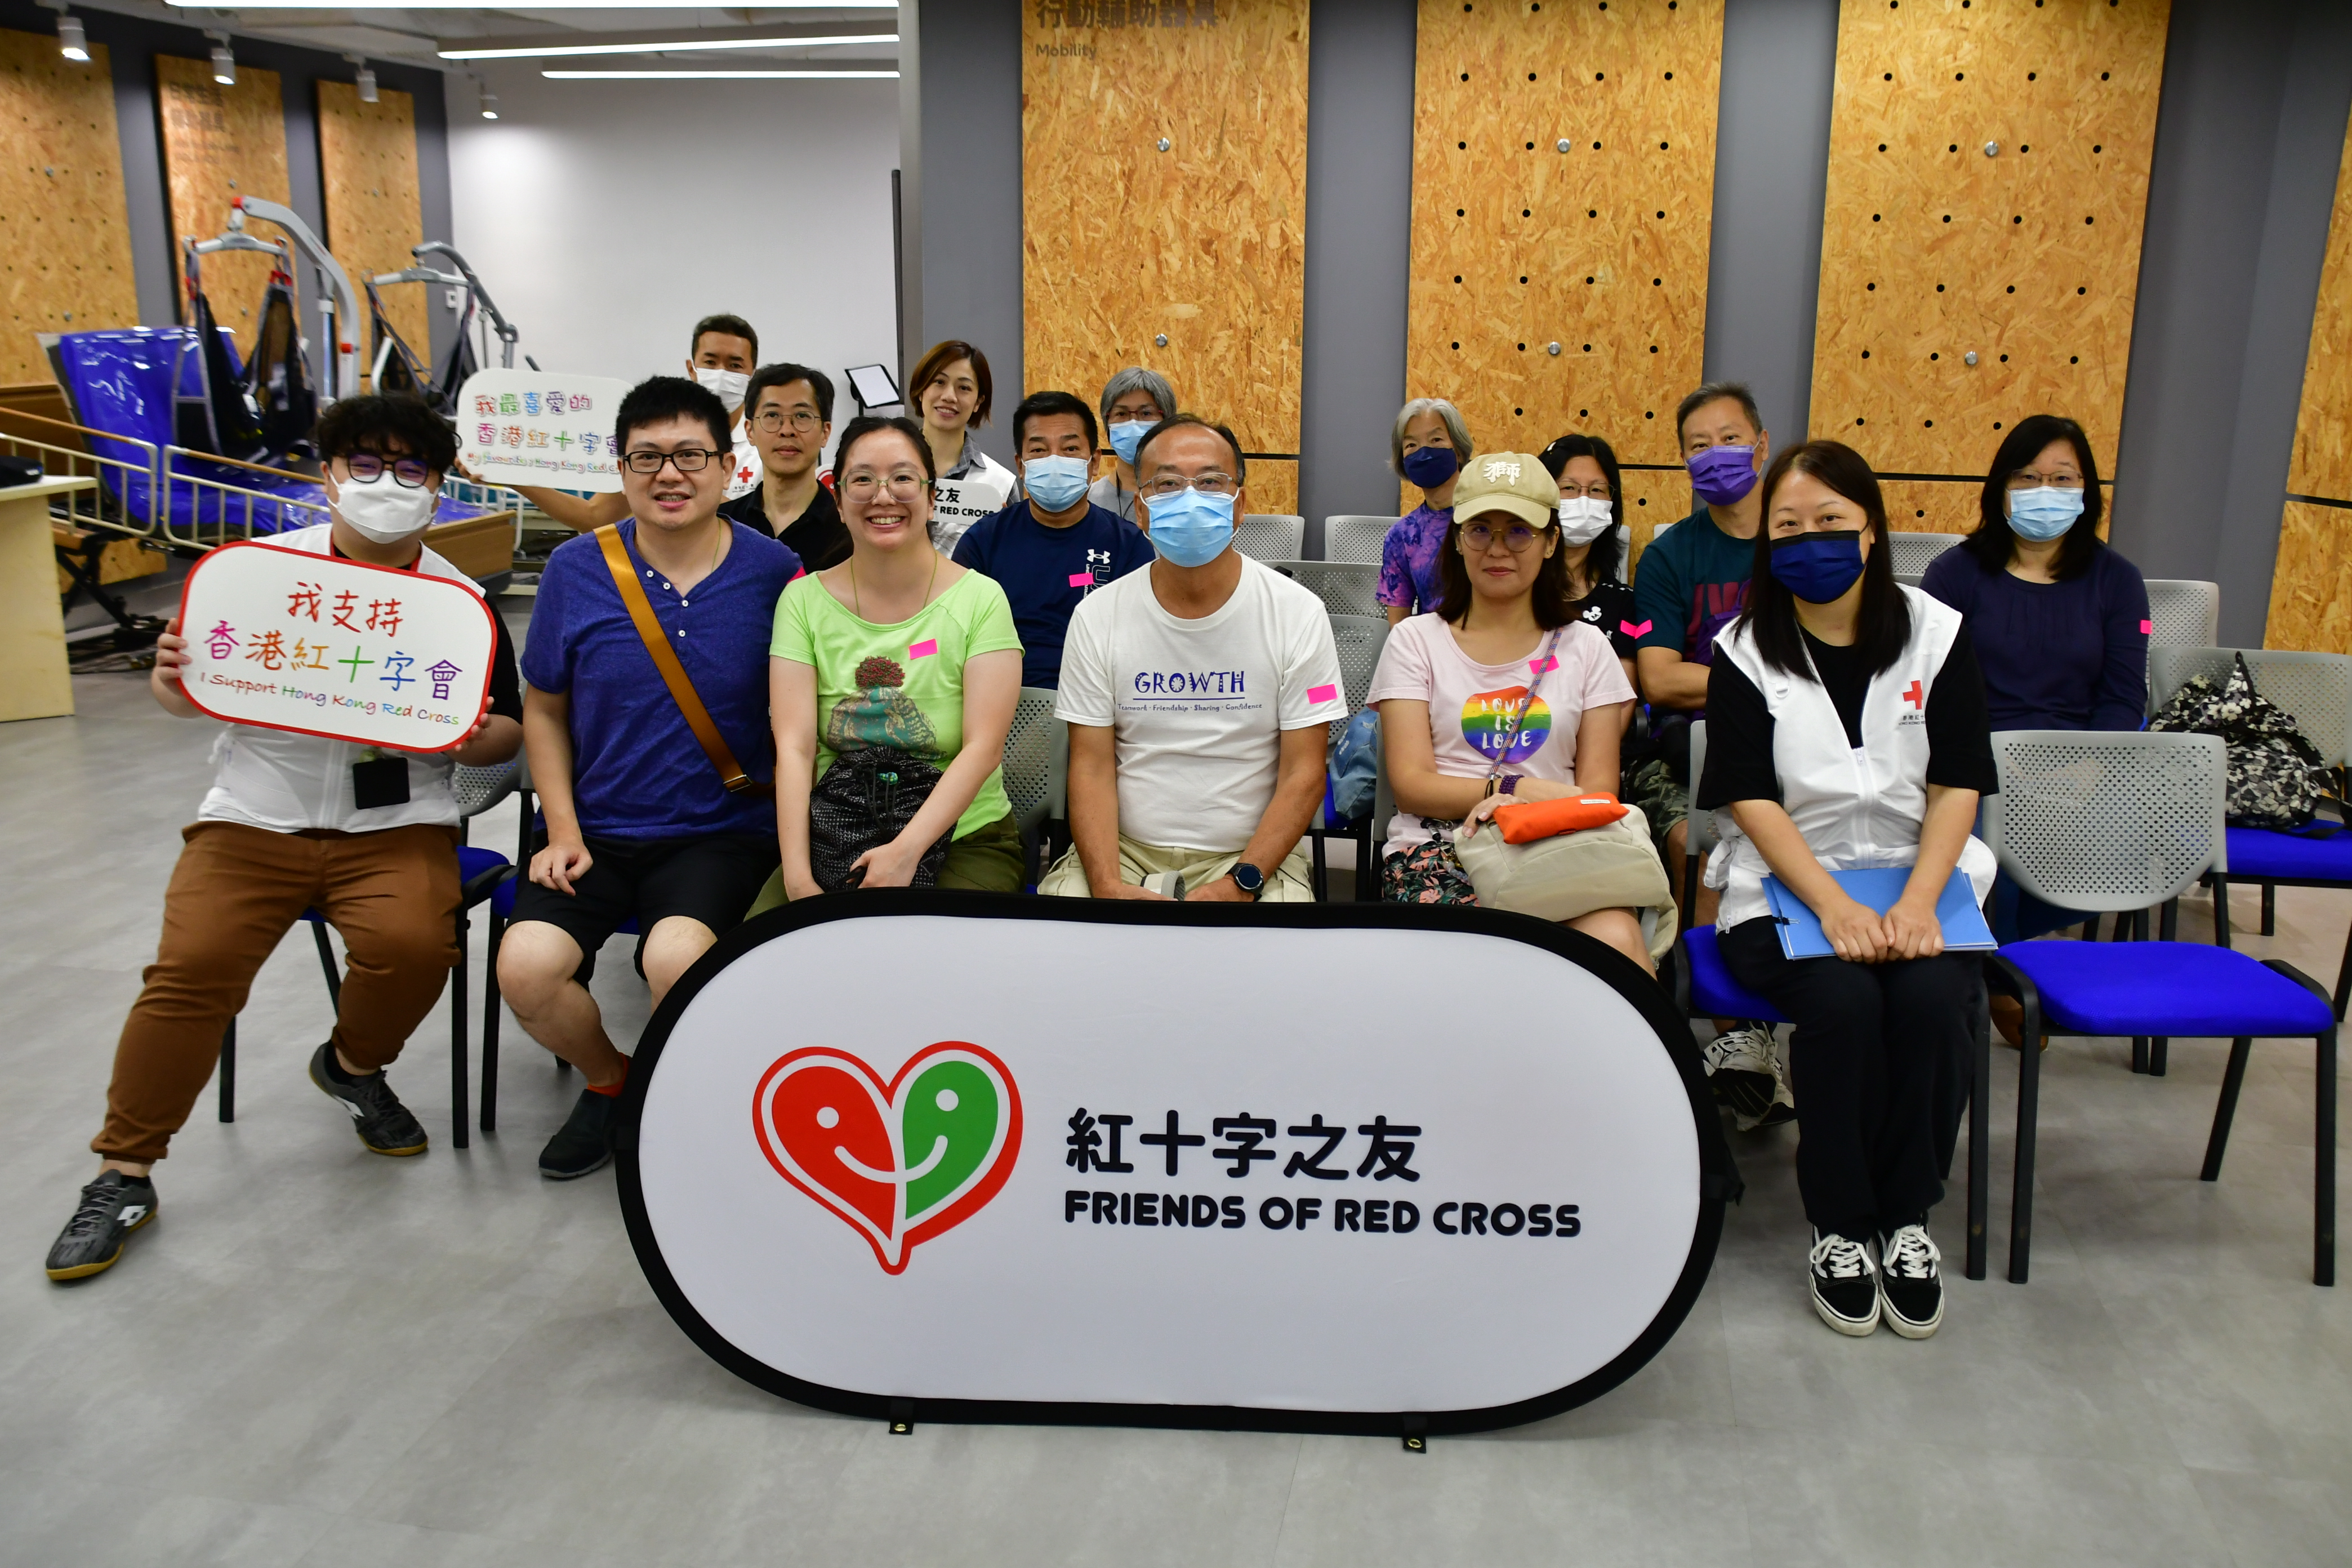 出席的紅十字會捐款者及親友都對是次活動滿感興趣，一同合照。